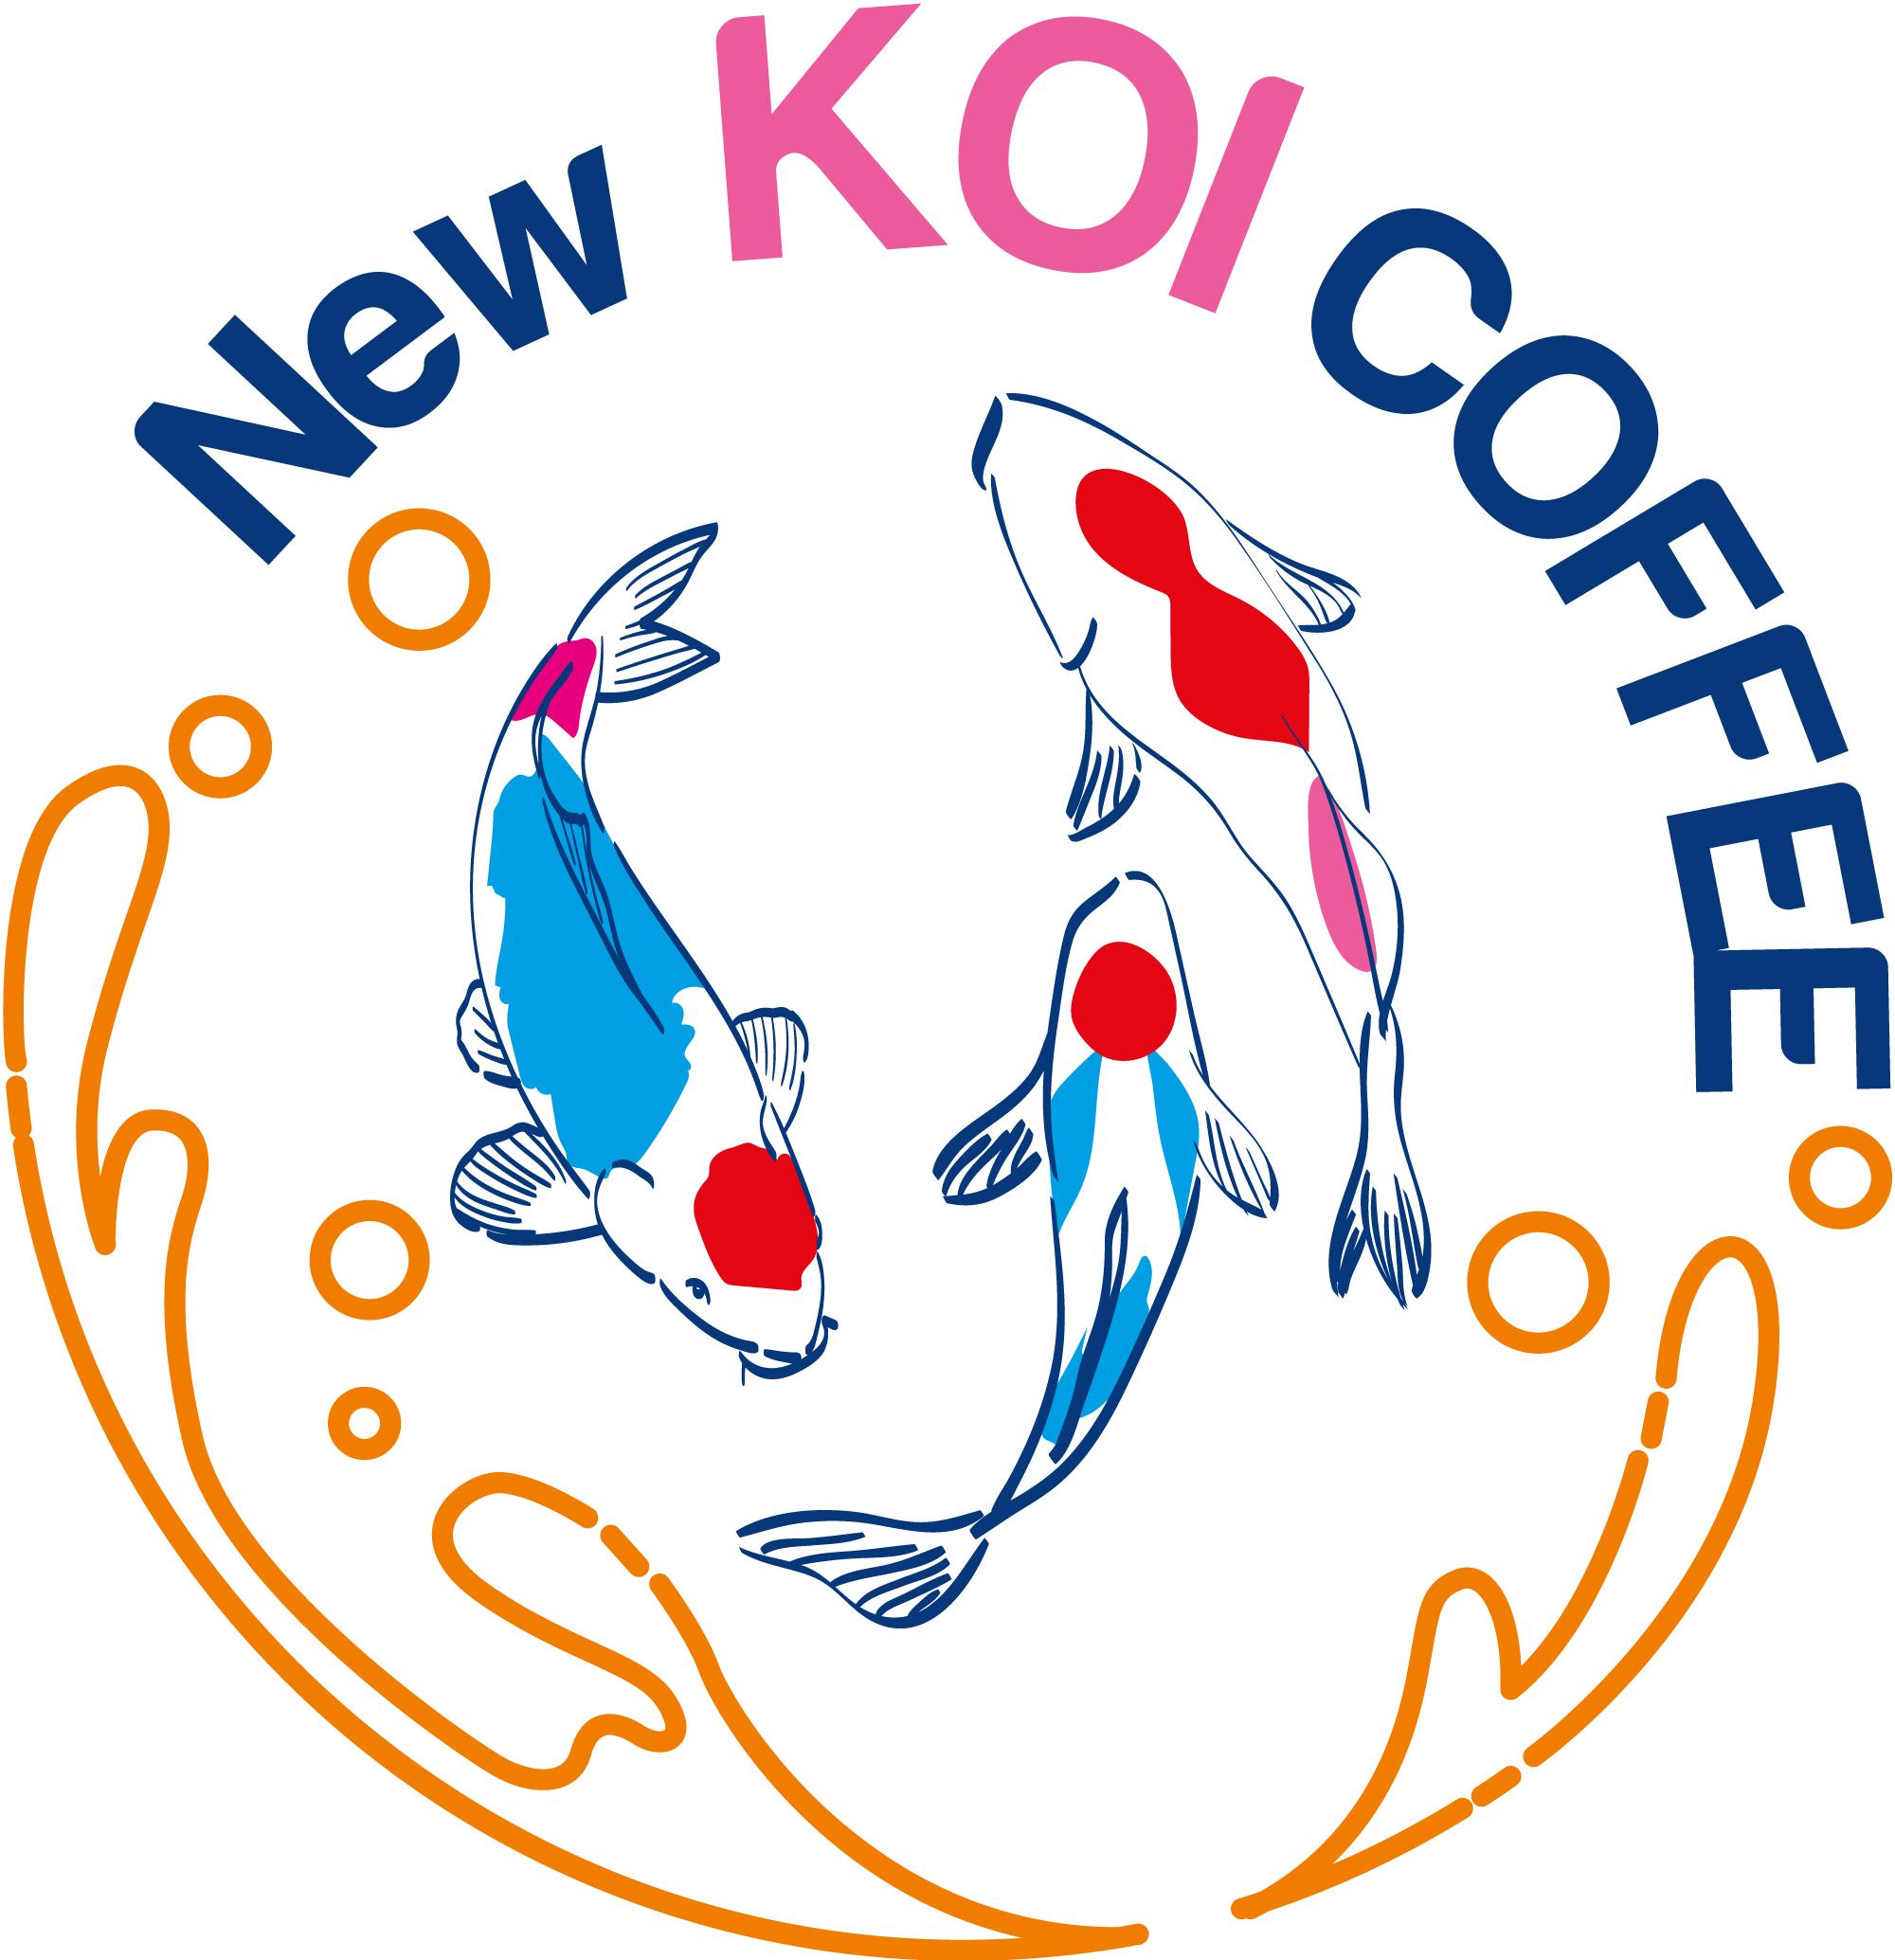 NEW KOI COFFEE